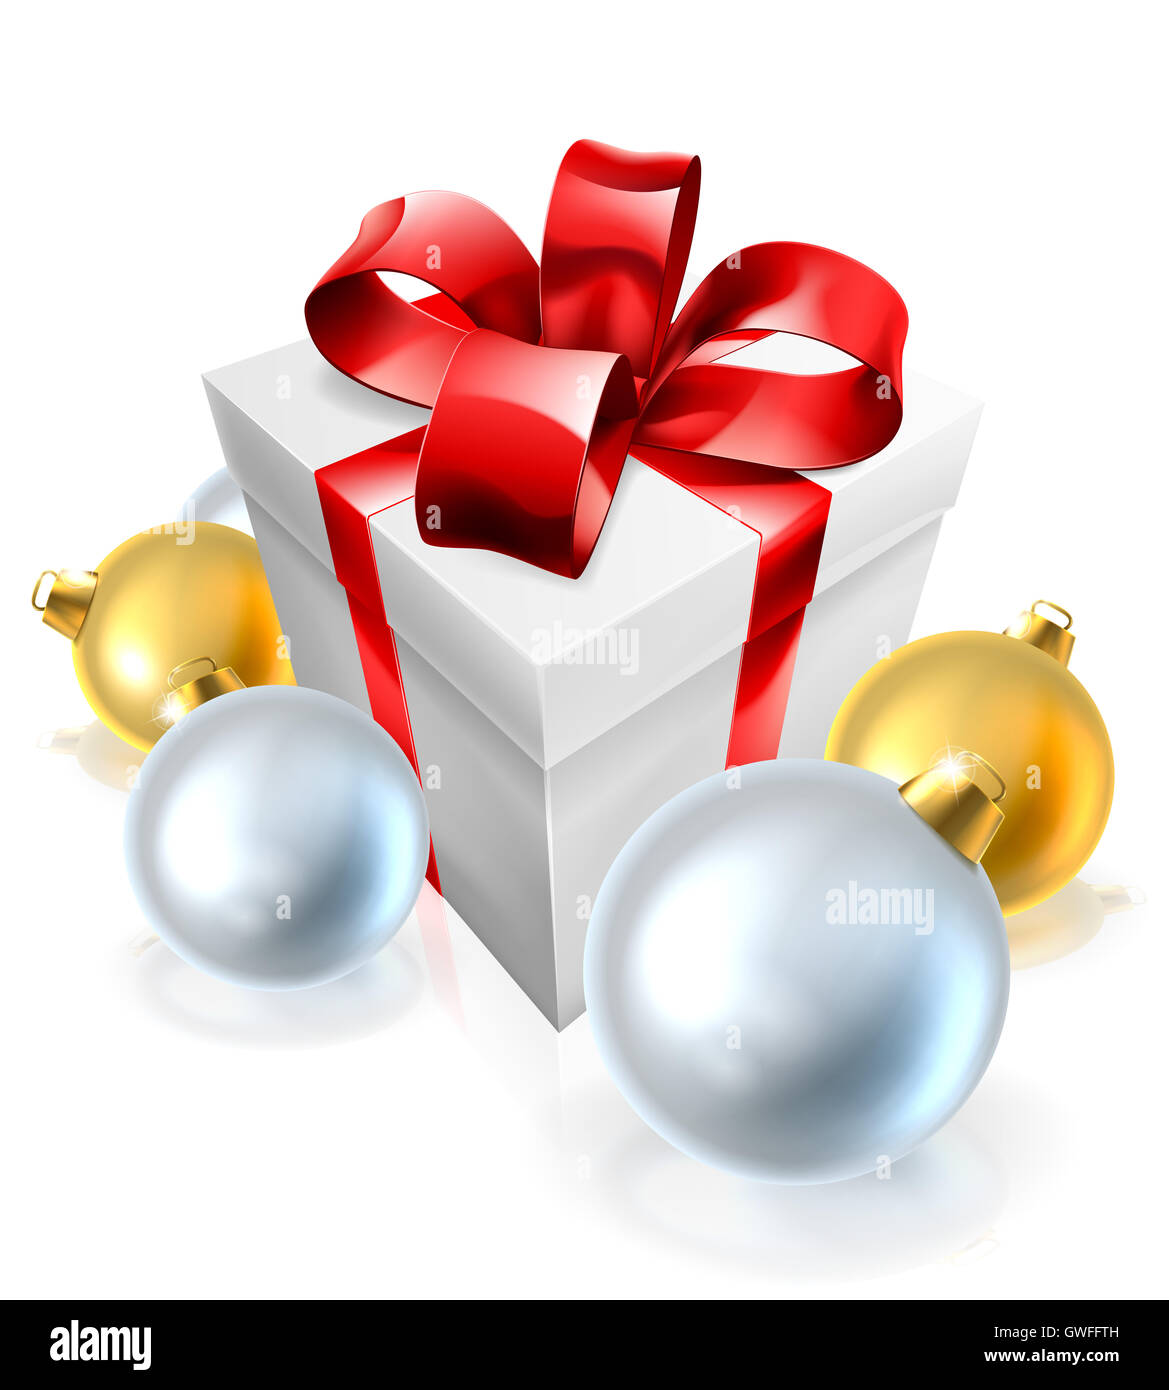 Una ilustración de un regalo de Navidad o presente y decoraciones para árboles de adorno Foto de stock